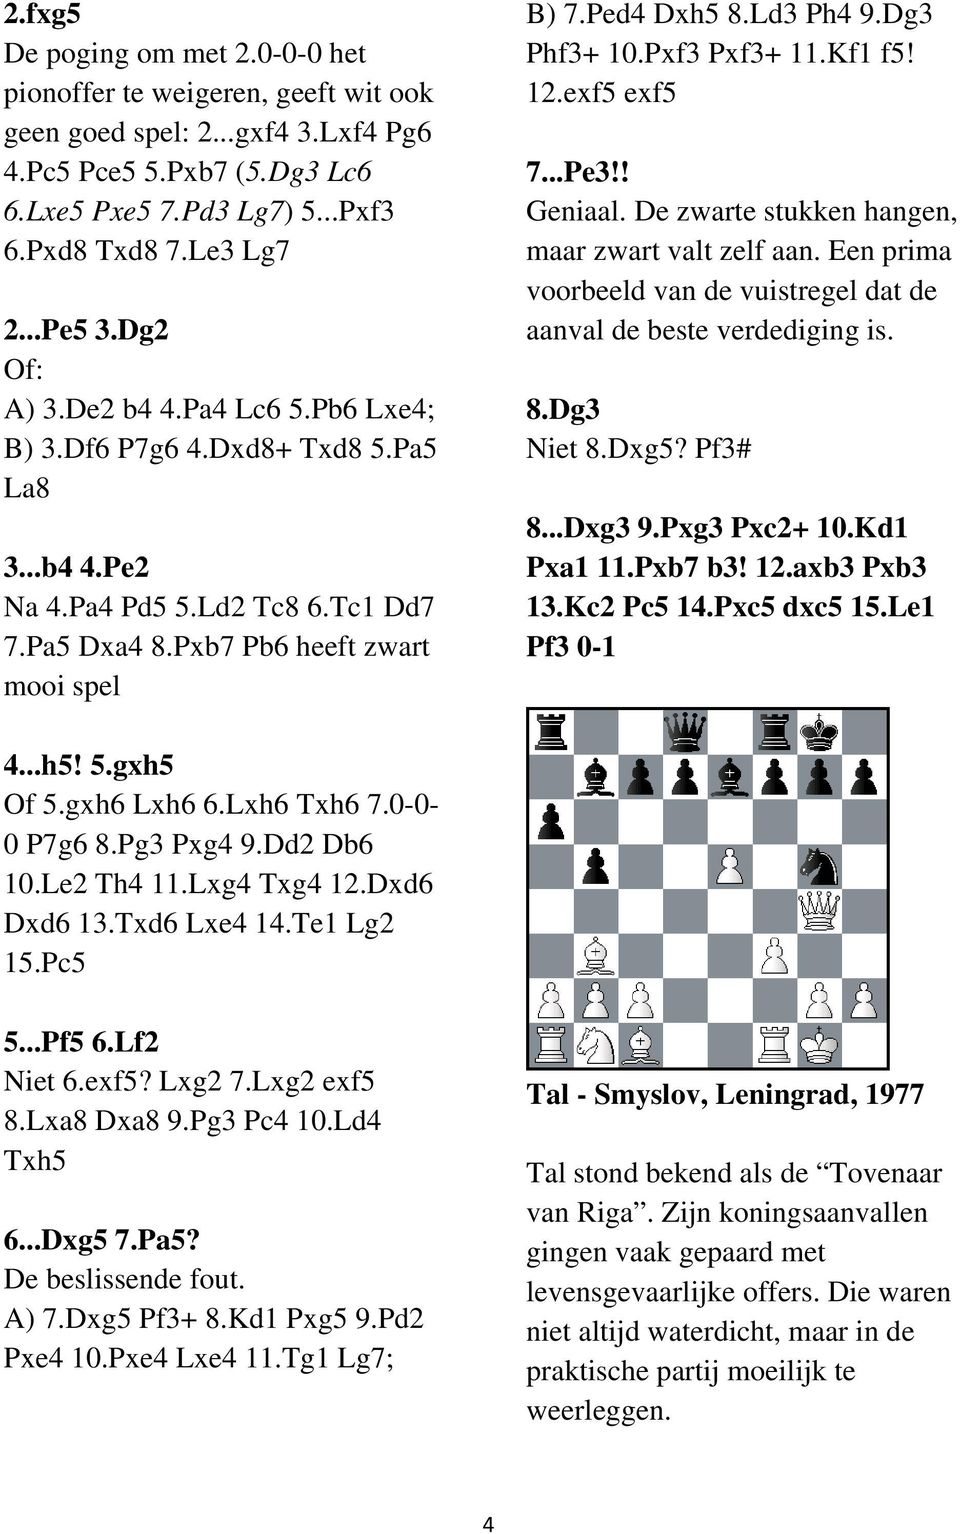 Dg3 Phf3+ 10.Pxf3 Pxf3+ 11.Kf1 f5! 12.exf5 exf5 7...Pe3!! Geniaal. De zwarte stukken hangen, maar zwart valt zelf aan. Een prima voorbeeld van de vuistregel dat de aanval de beste verdediging is. 8.